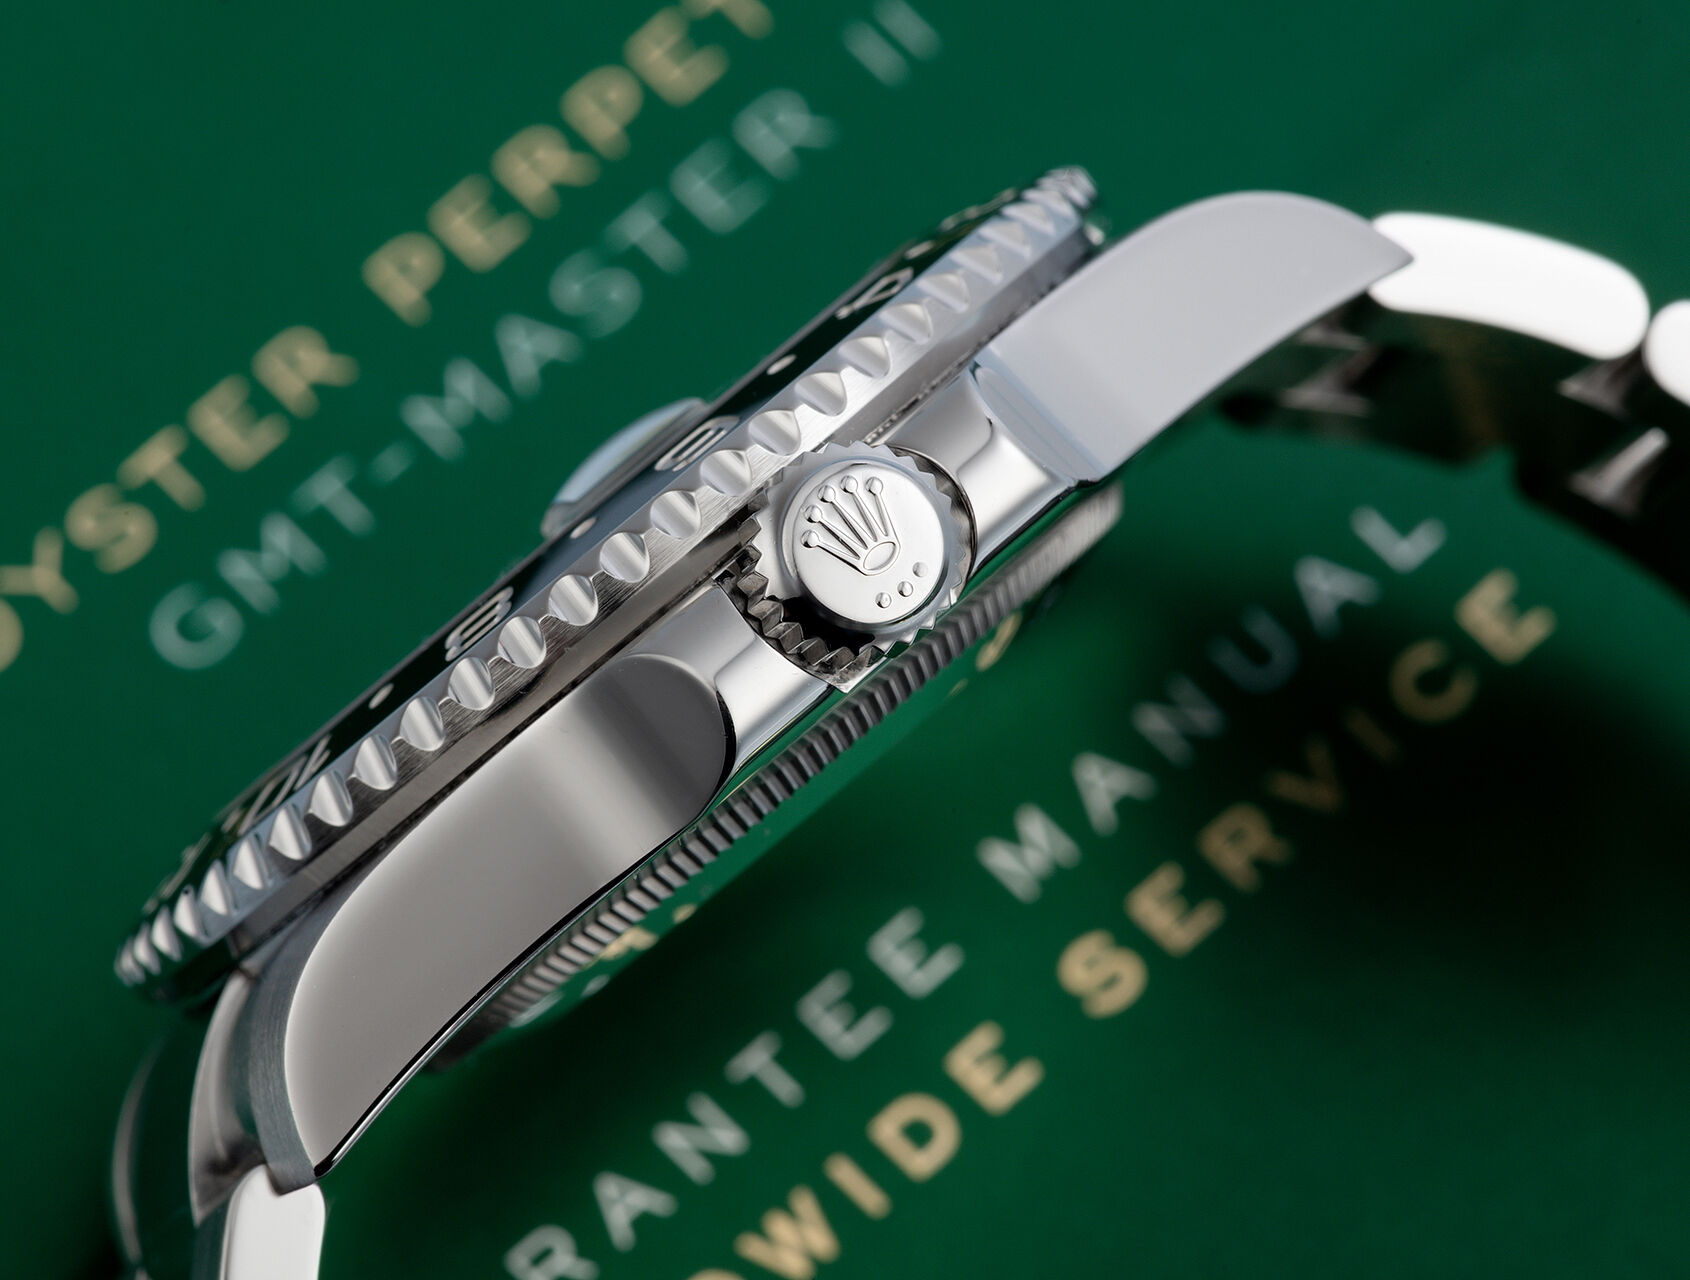 ref 116710LN | 116710LN - UK Retailed | Rolex GMT-Master II